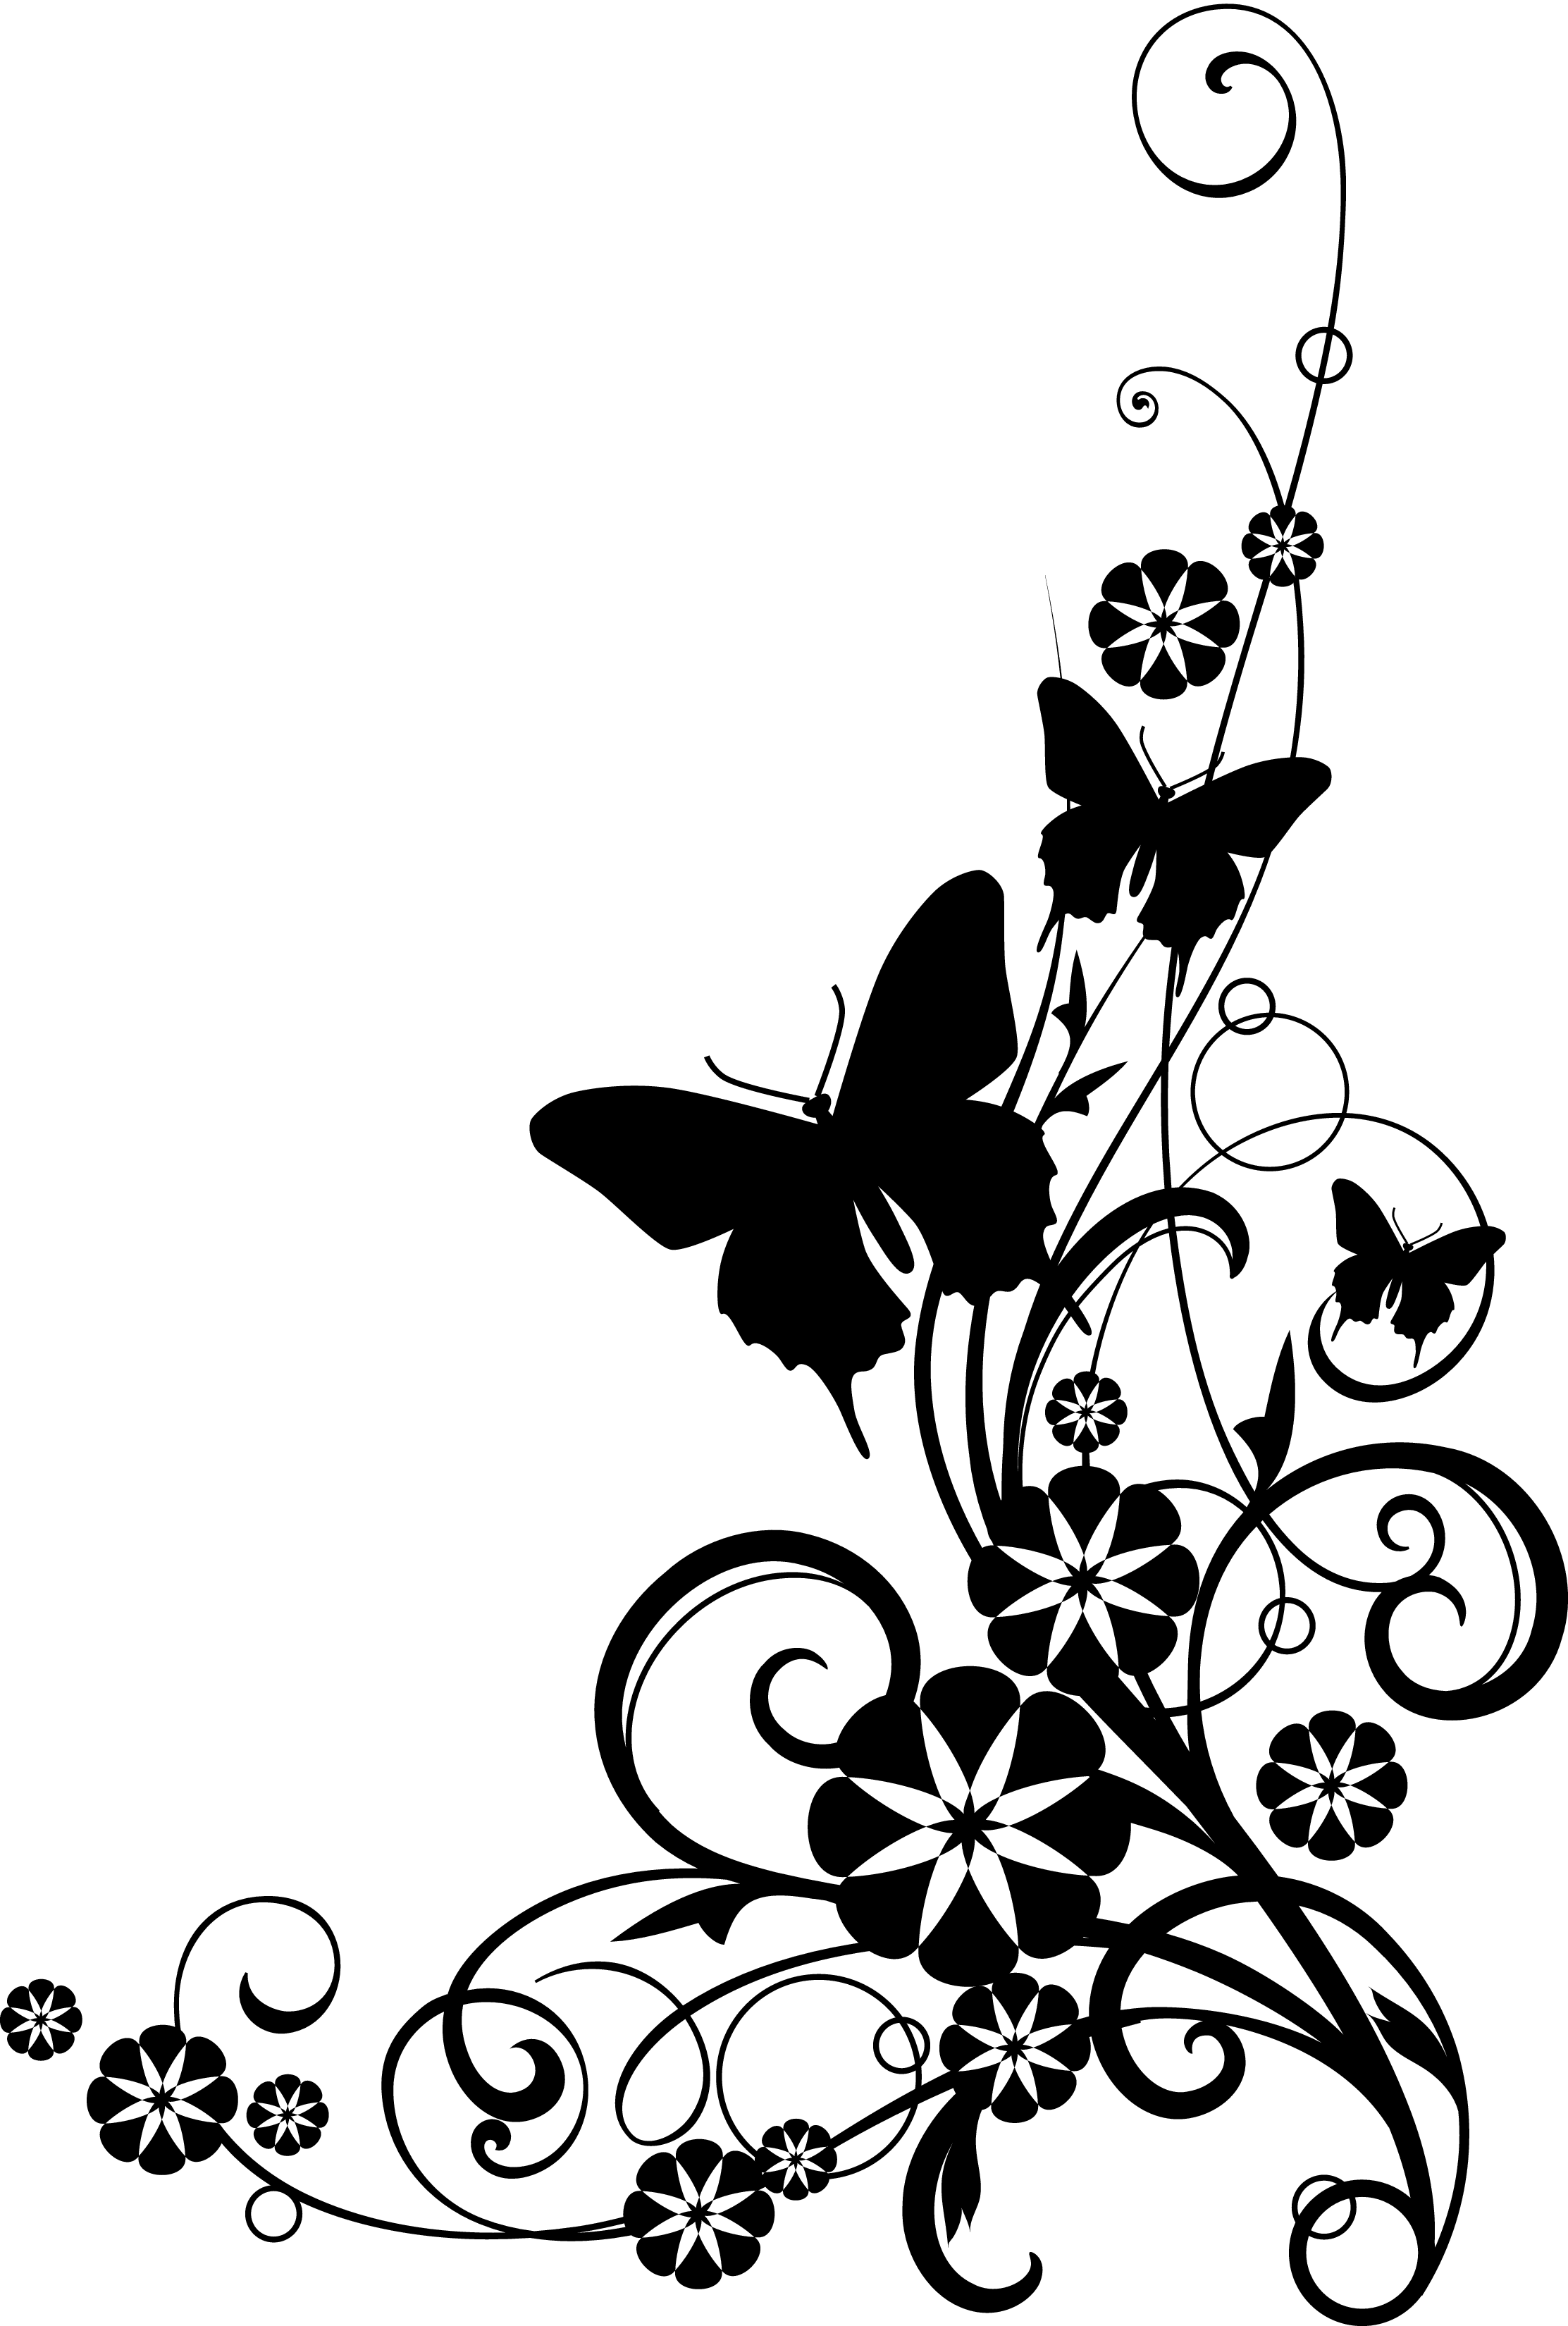 Clip Art Flowers Black And White Border